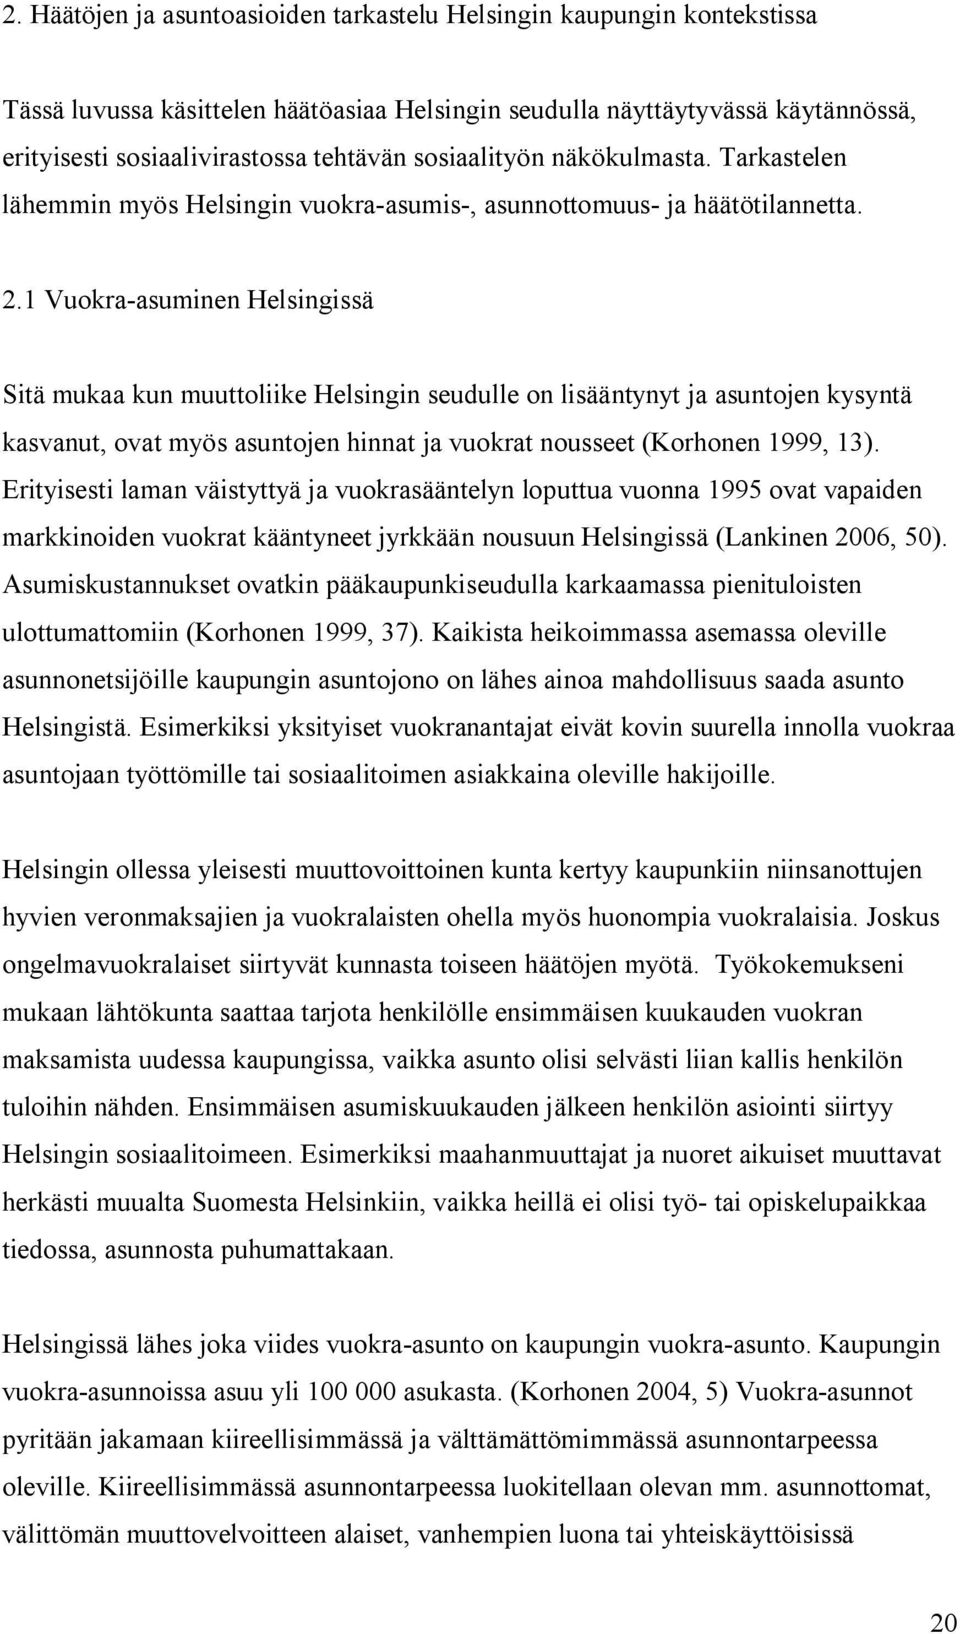 1 Vuokra-asuminen Helsingissä Sitä mukaa kun muuttoliike Helsingin seudulle on lisääntynyt ja asuntojen kysyntä kasvanut, ovat myös asuntojen hinnat ja vuokrat nousseet (Korhonen 1999, 13).